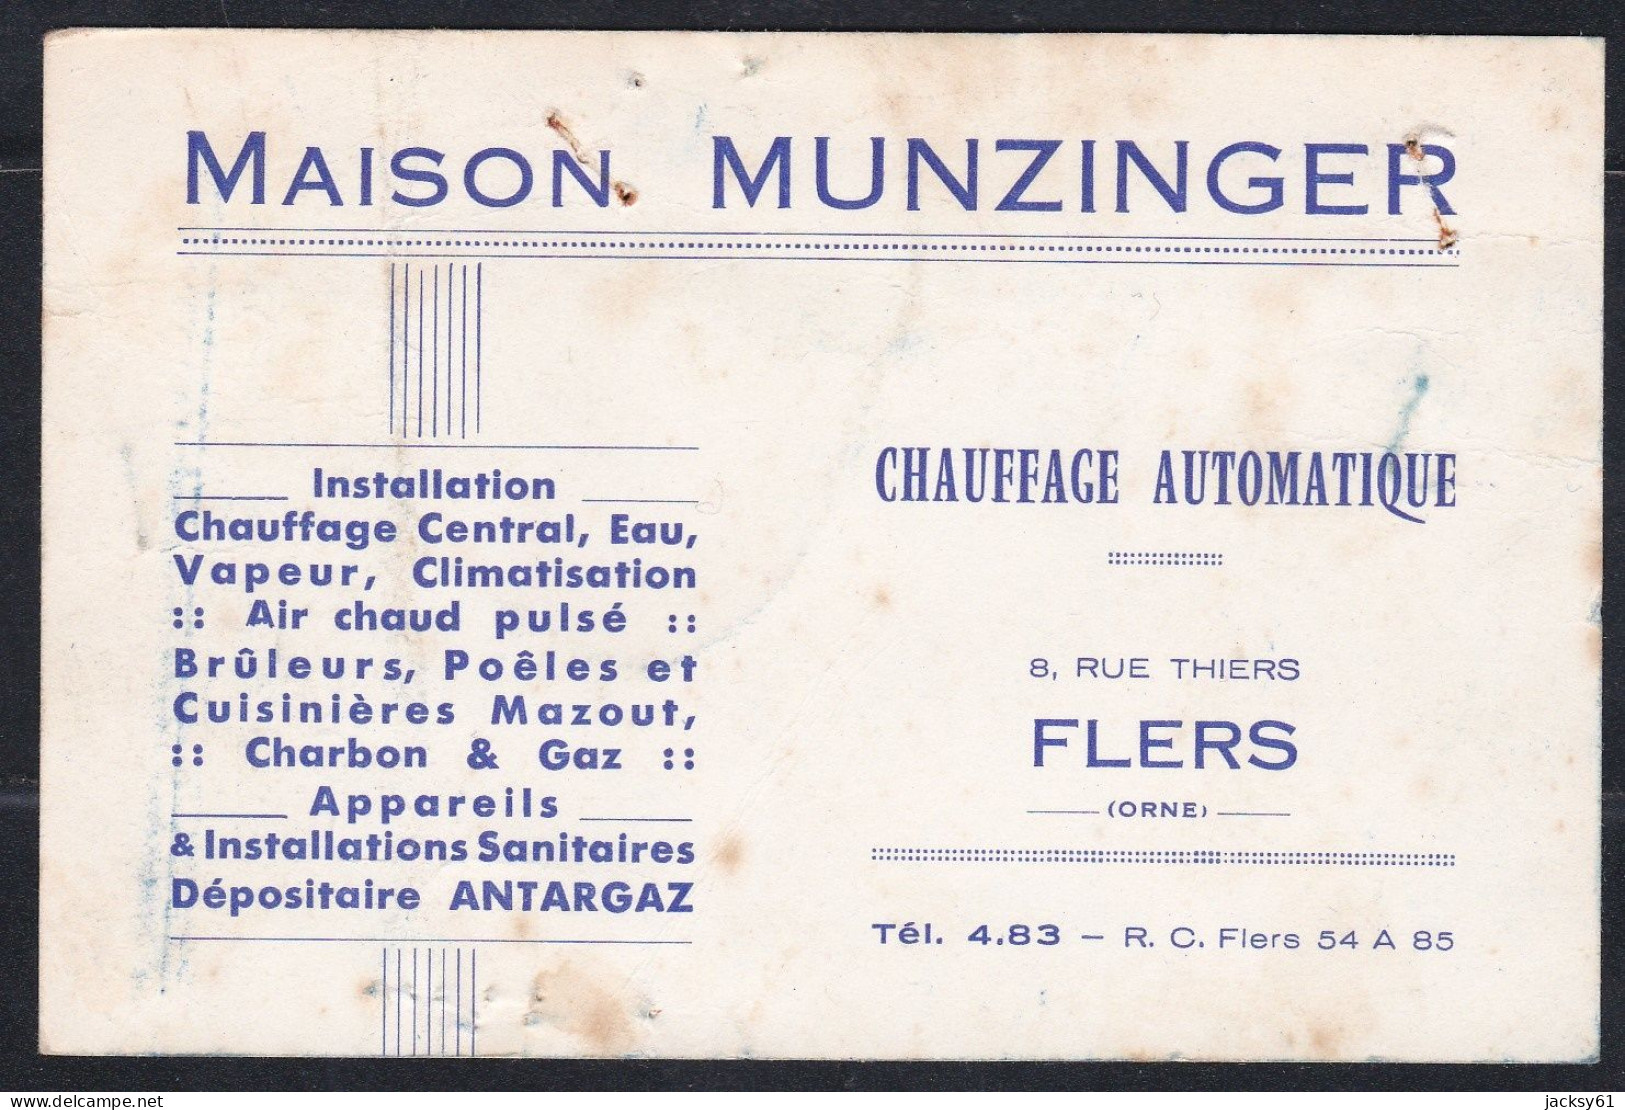 61 - Flers - Maison Munzinger - Chauffage Automatique - Cartes De Visite